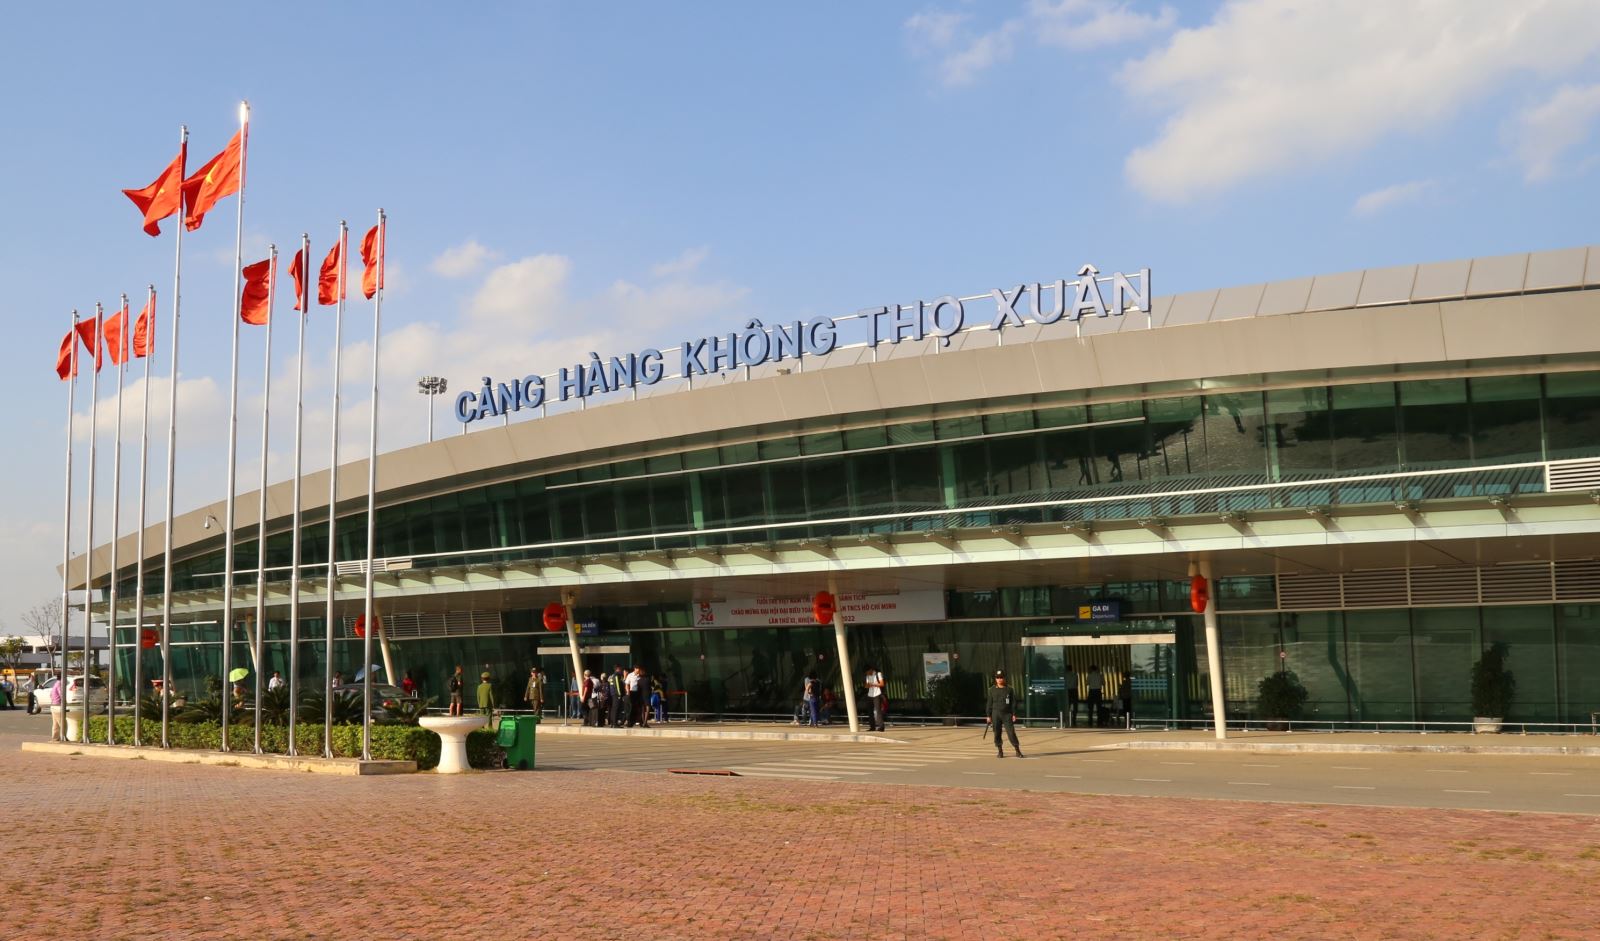 Sân bay Thọ Xuân, Thanh Hoá